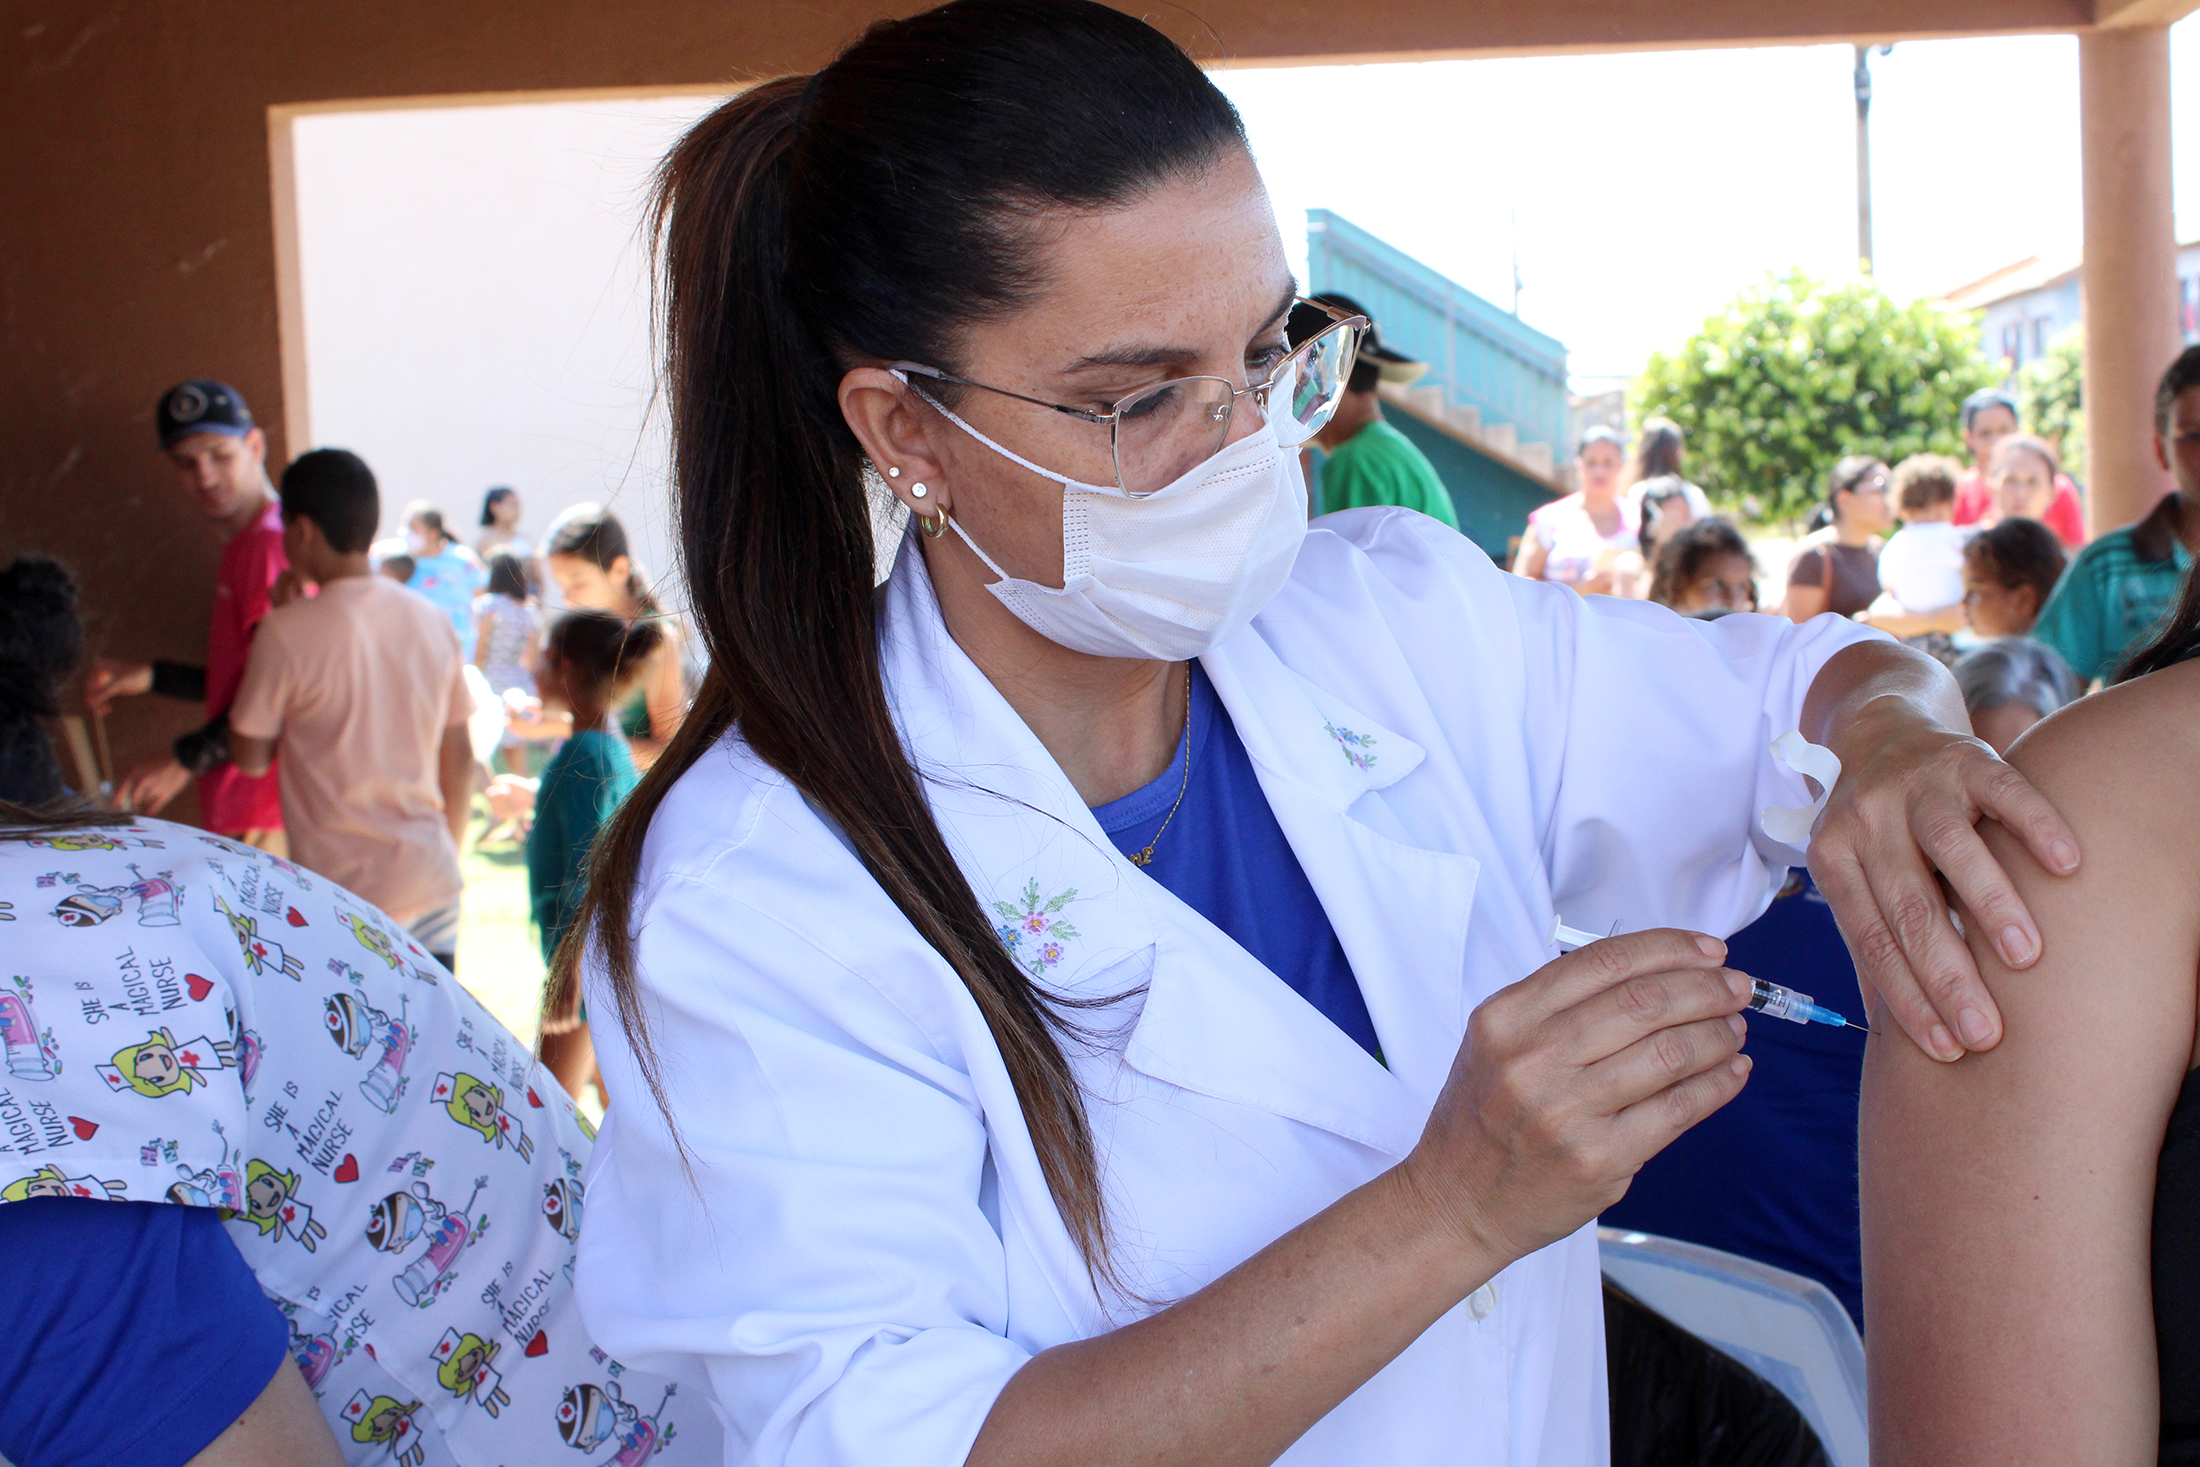 Vacinação contra a gripe em Naviraí é ampliada para todas as pessoas acima de 6 meses de idade